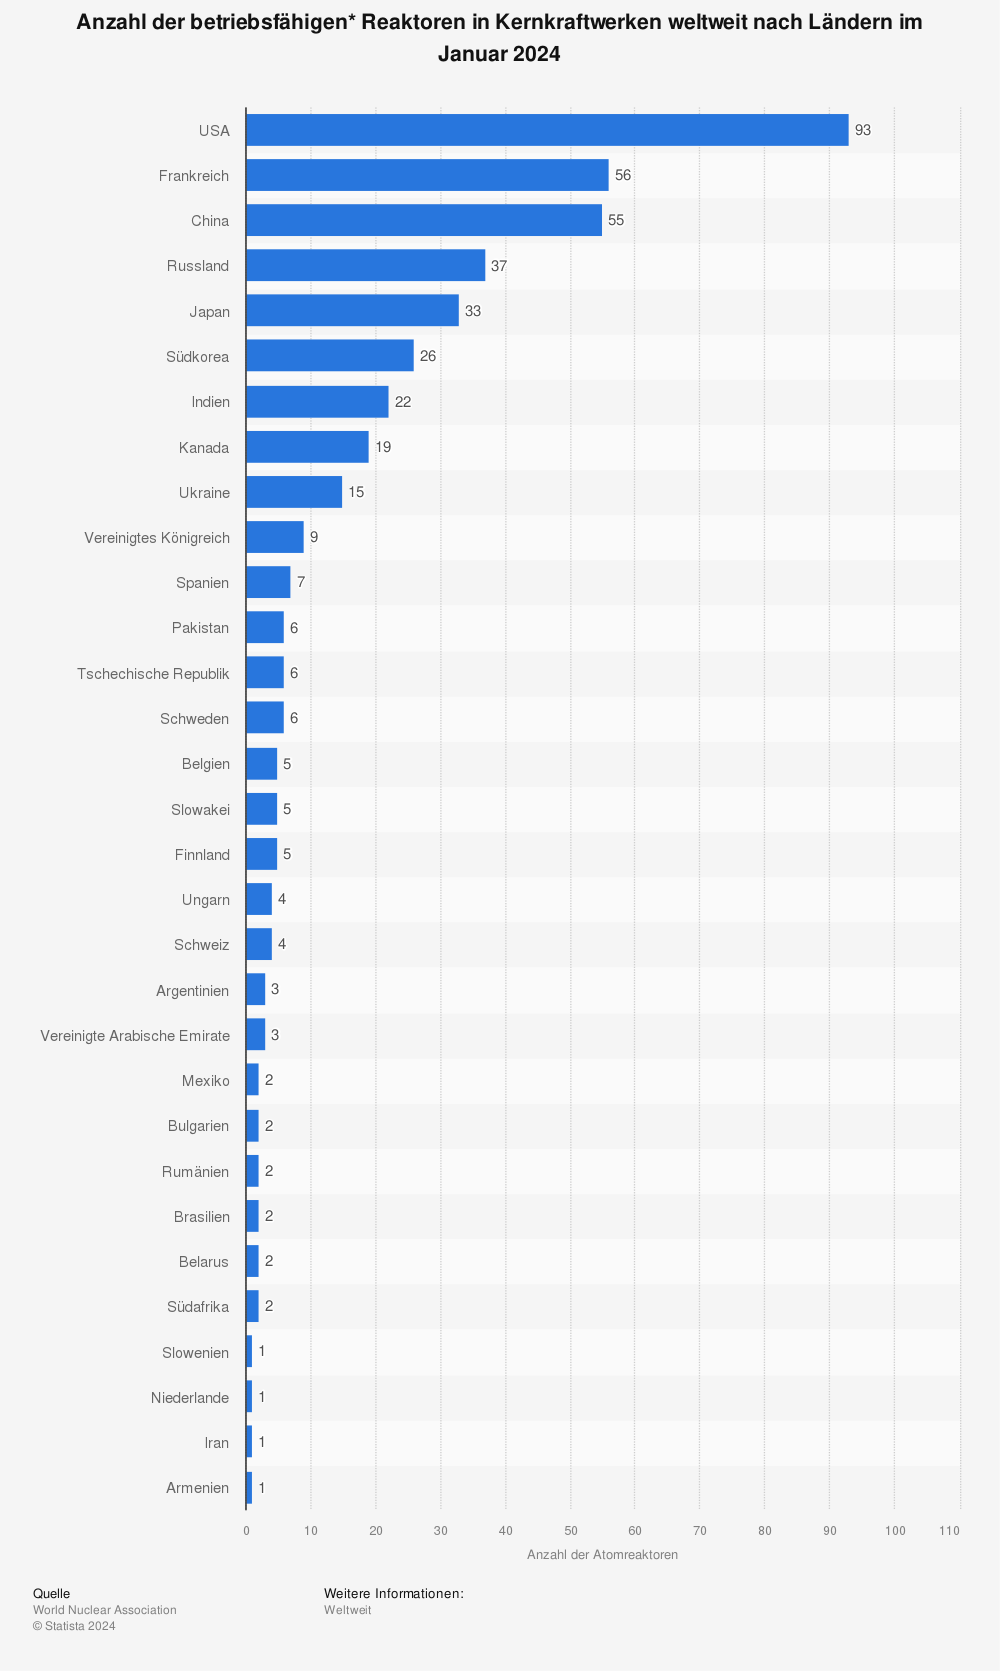 Kernkraftwerke - Anzahl der Reaktoren nach Ländern im Juli 2013